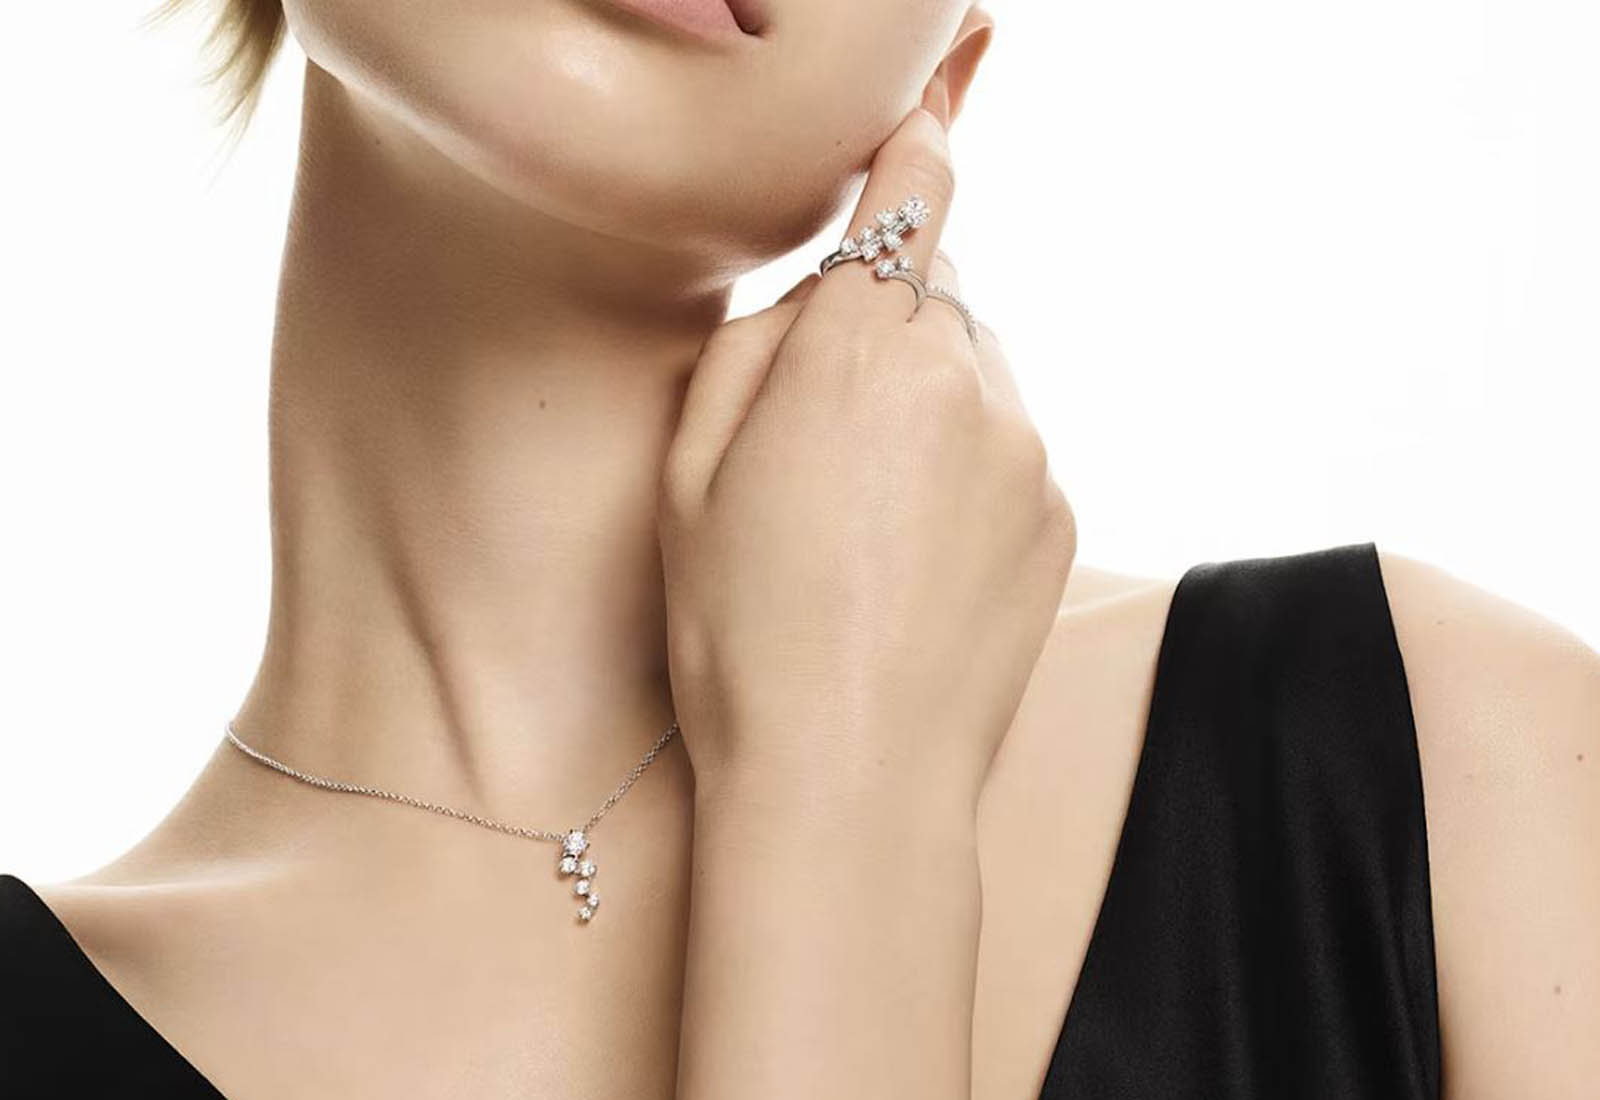 Lab Grown Diamond Necklaces, Created Diamonds